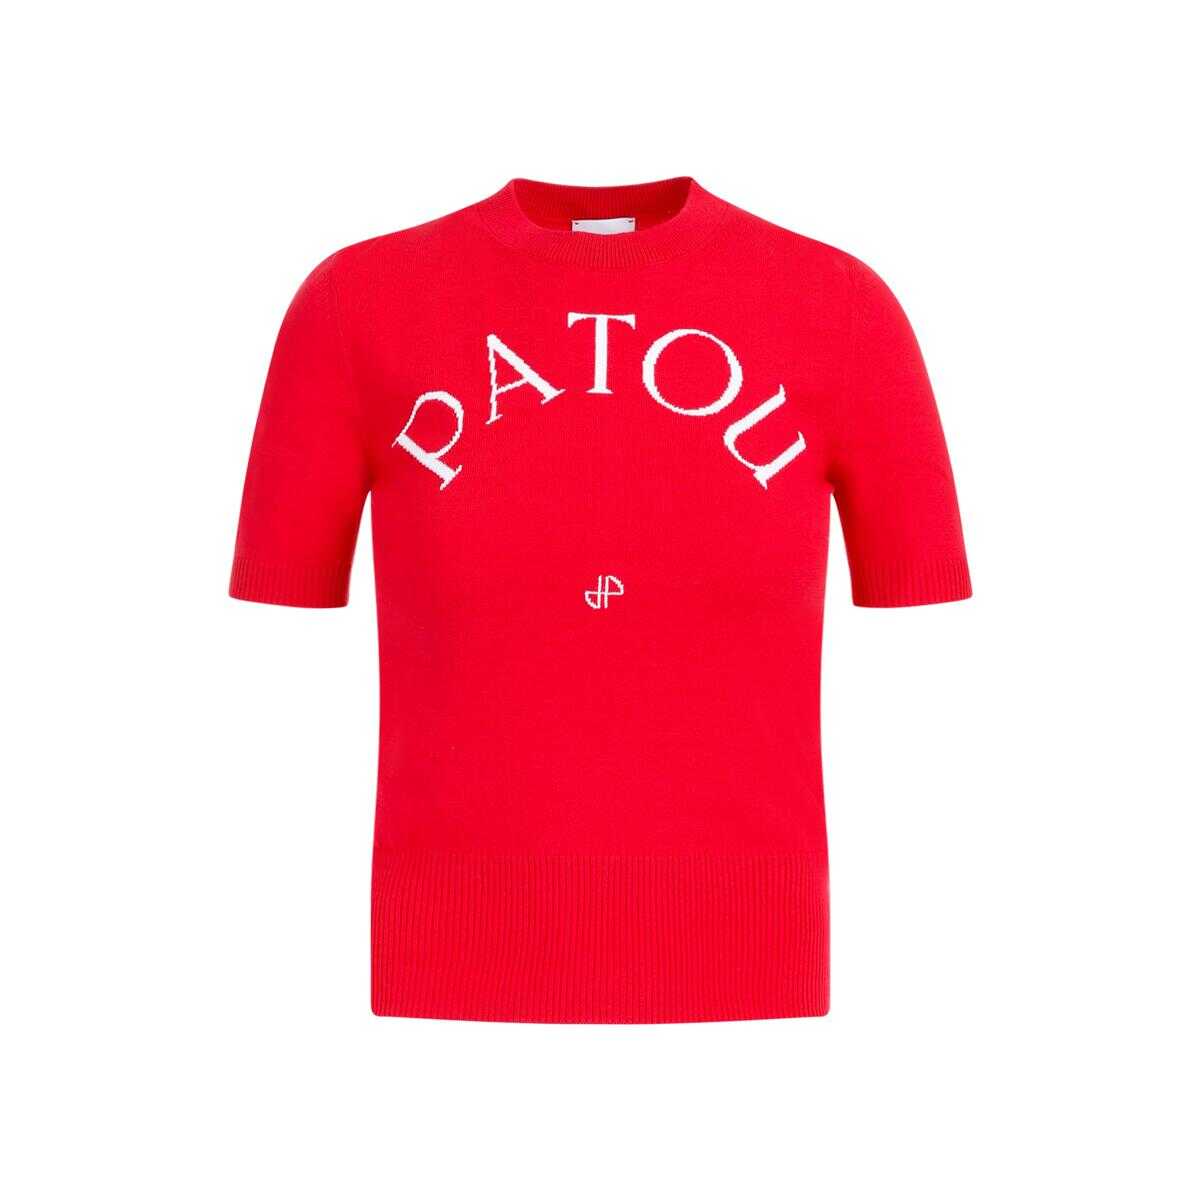 Patou PATOU JACQUARD KNIT TOP TSHIRT RED